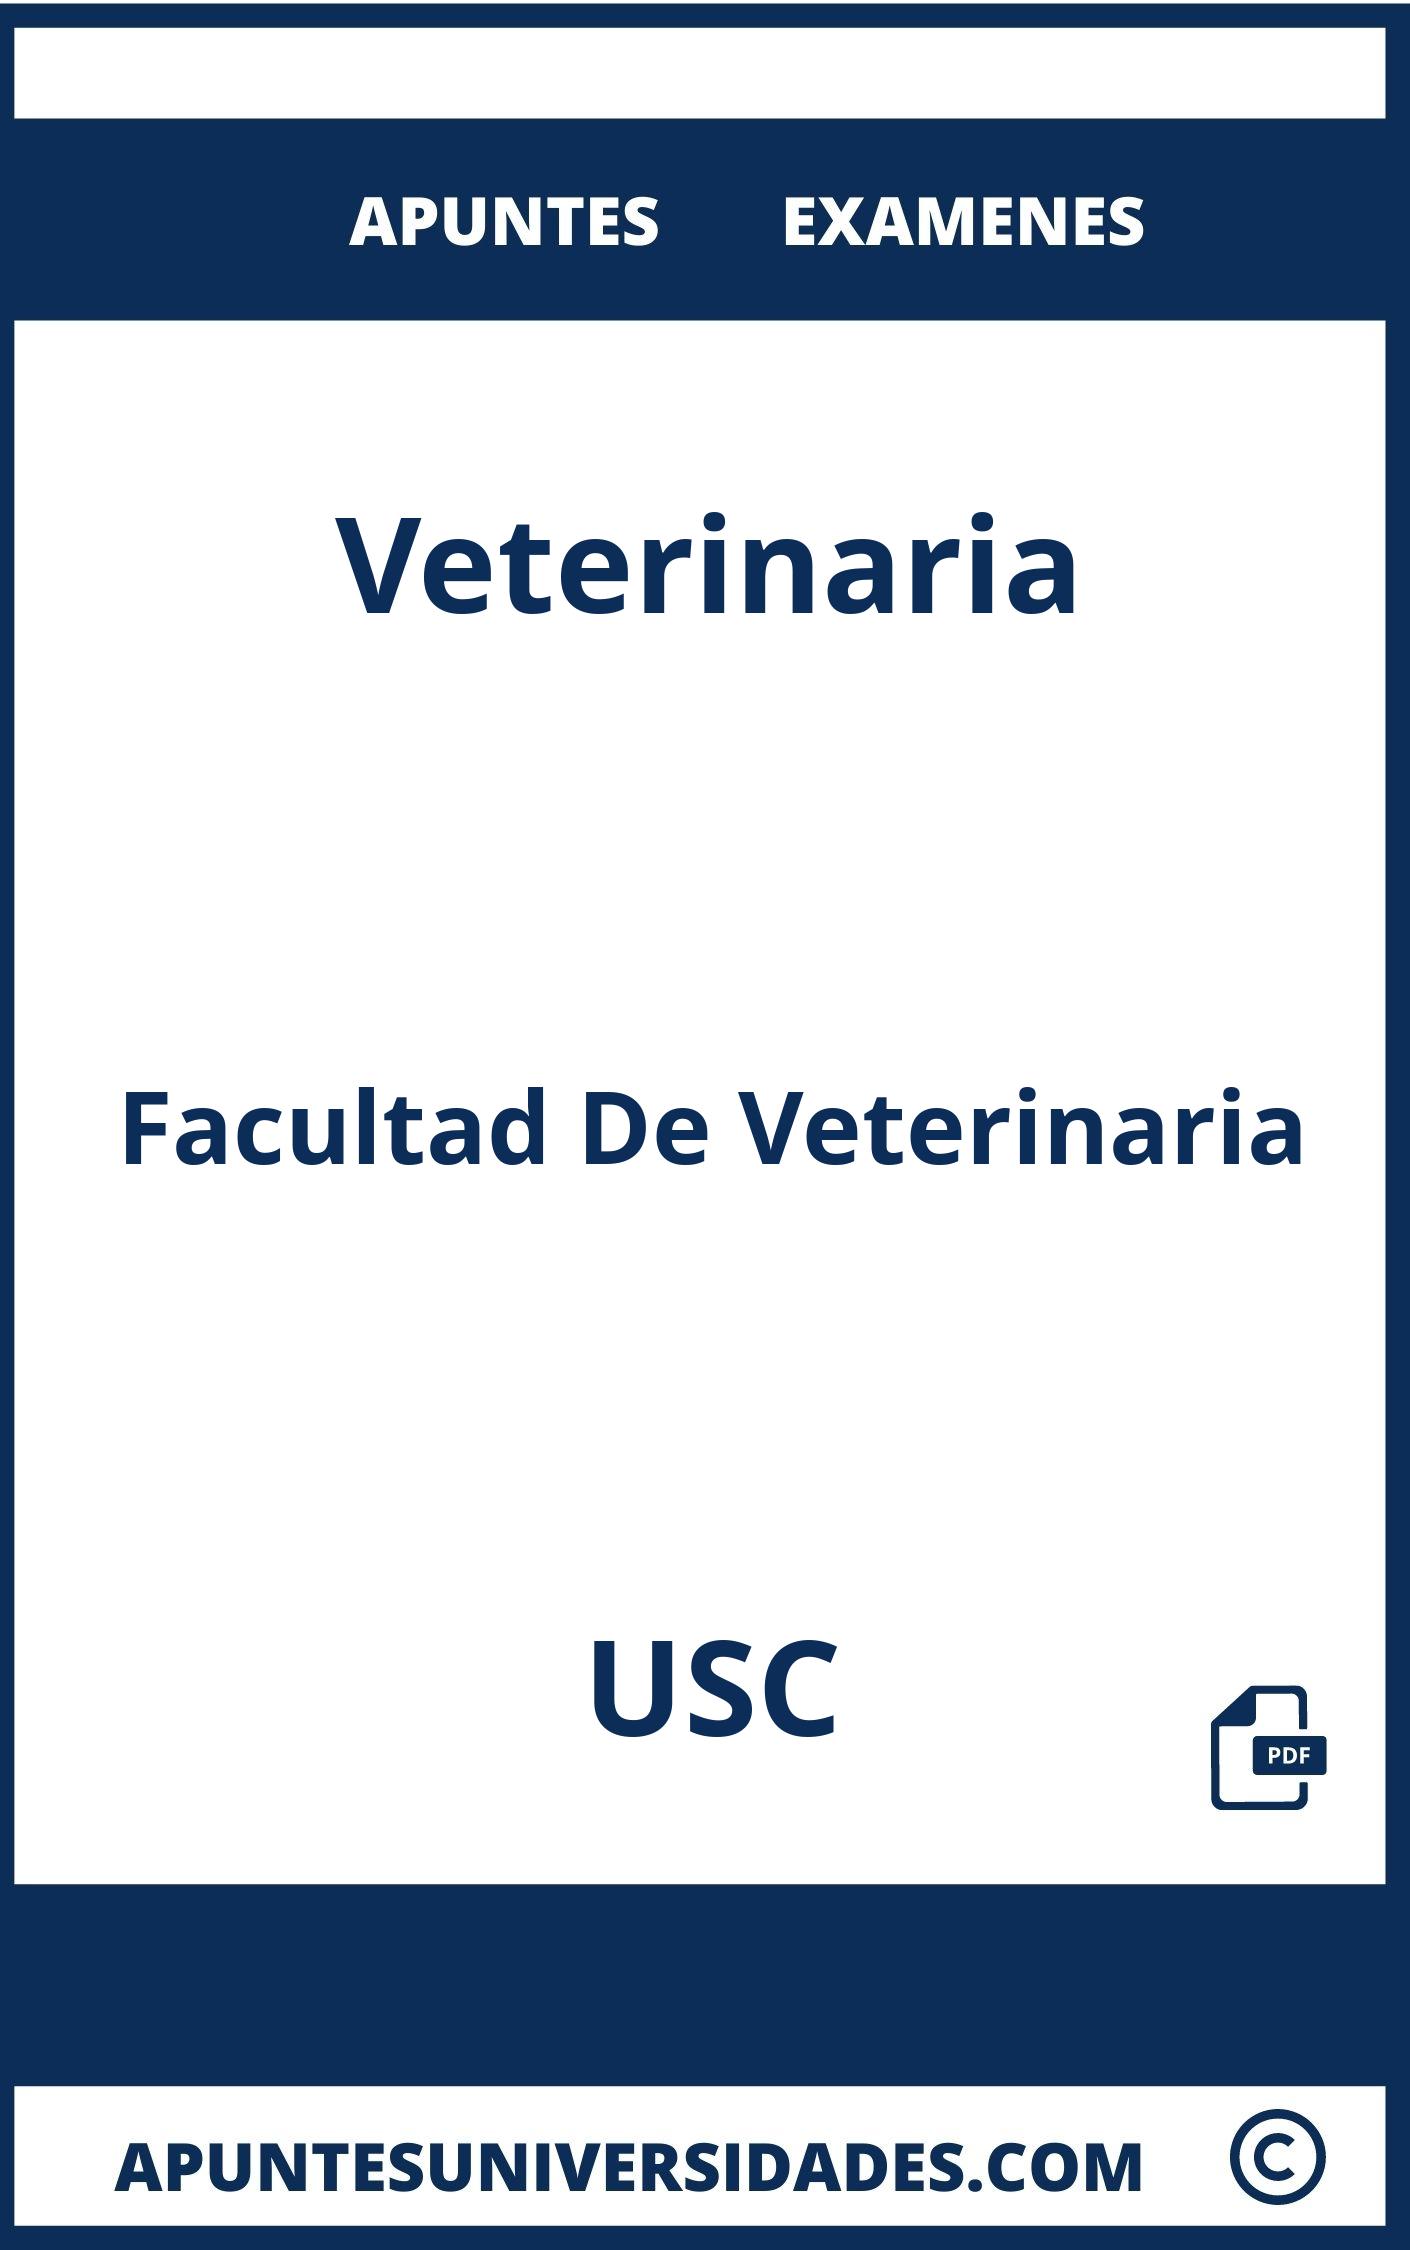 Apuntes Examenes Veterinaria USC